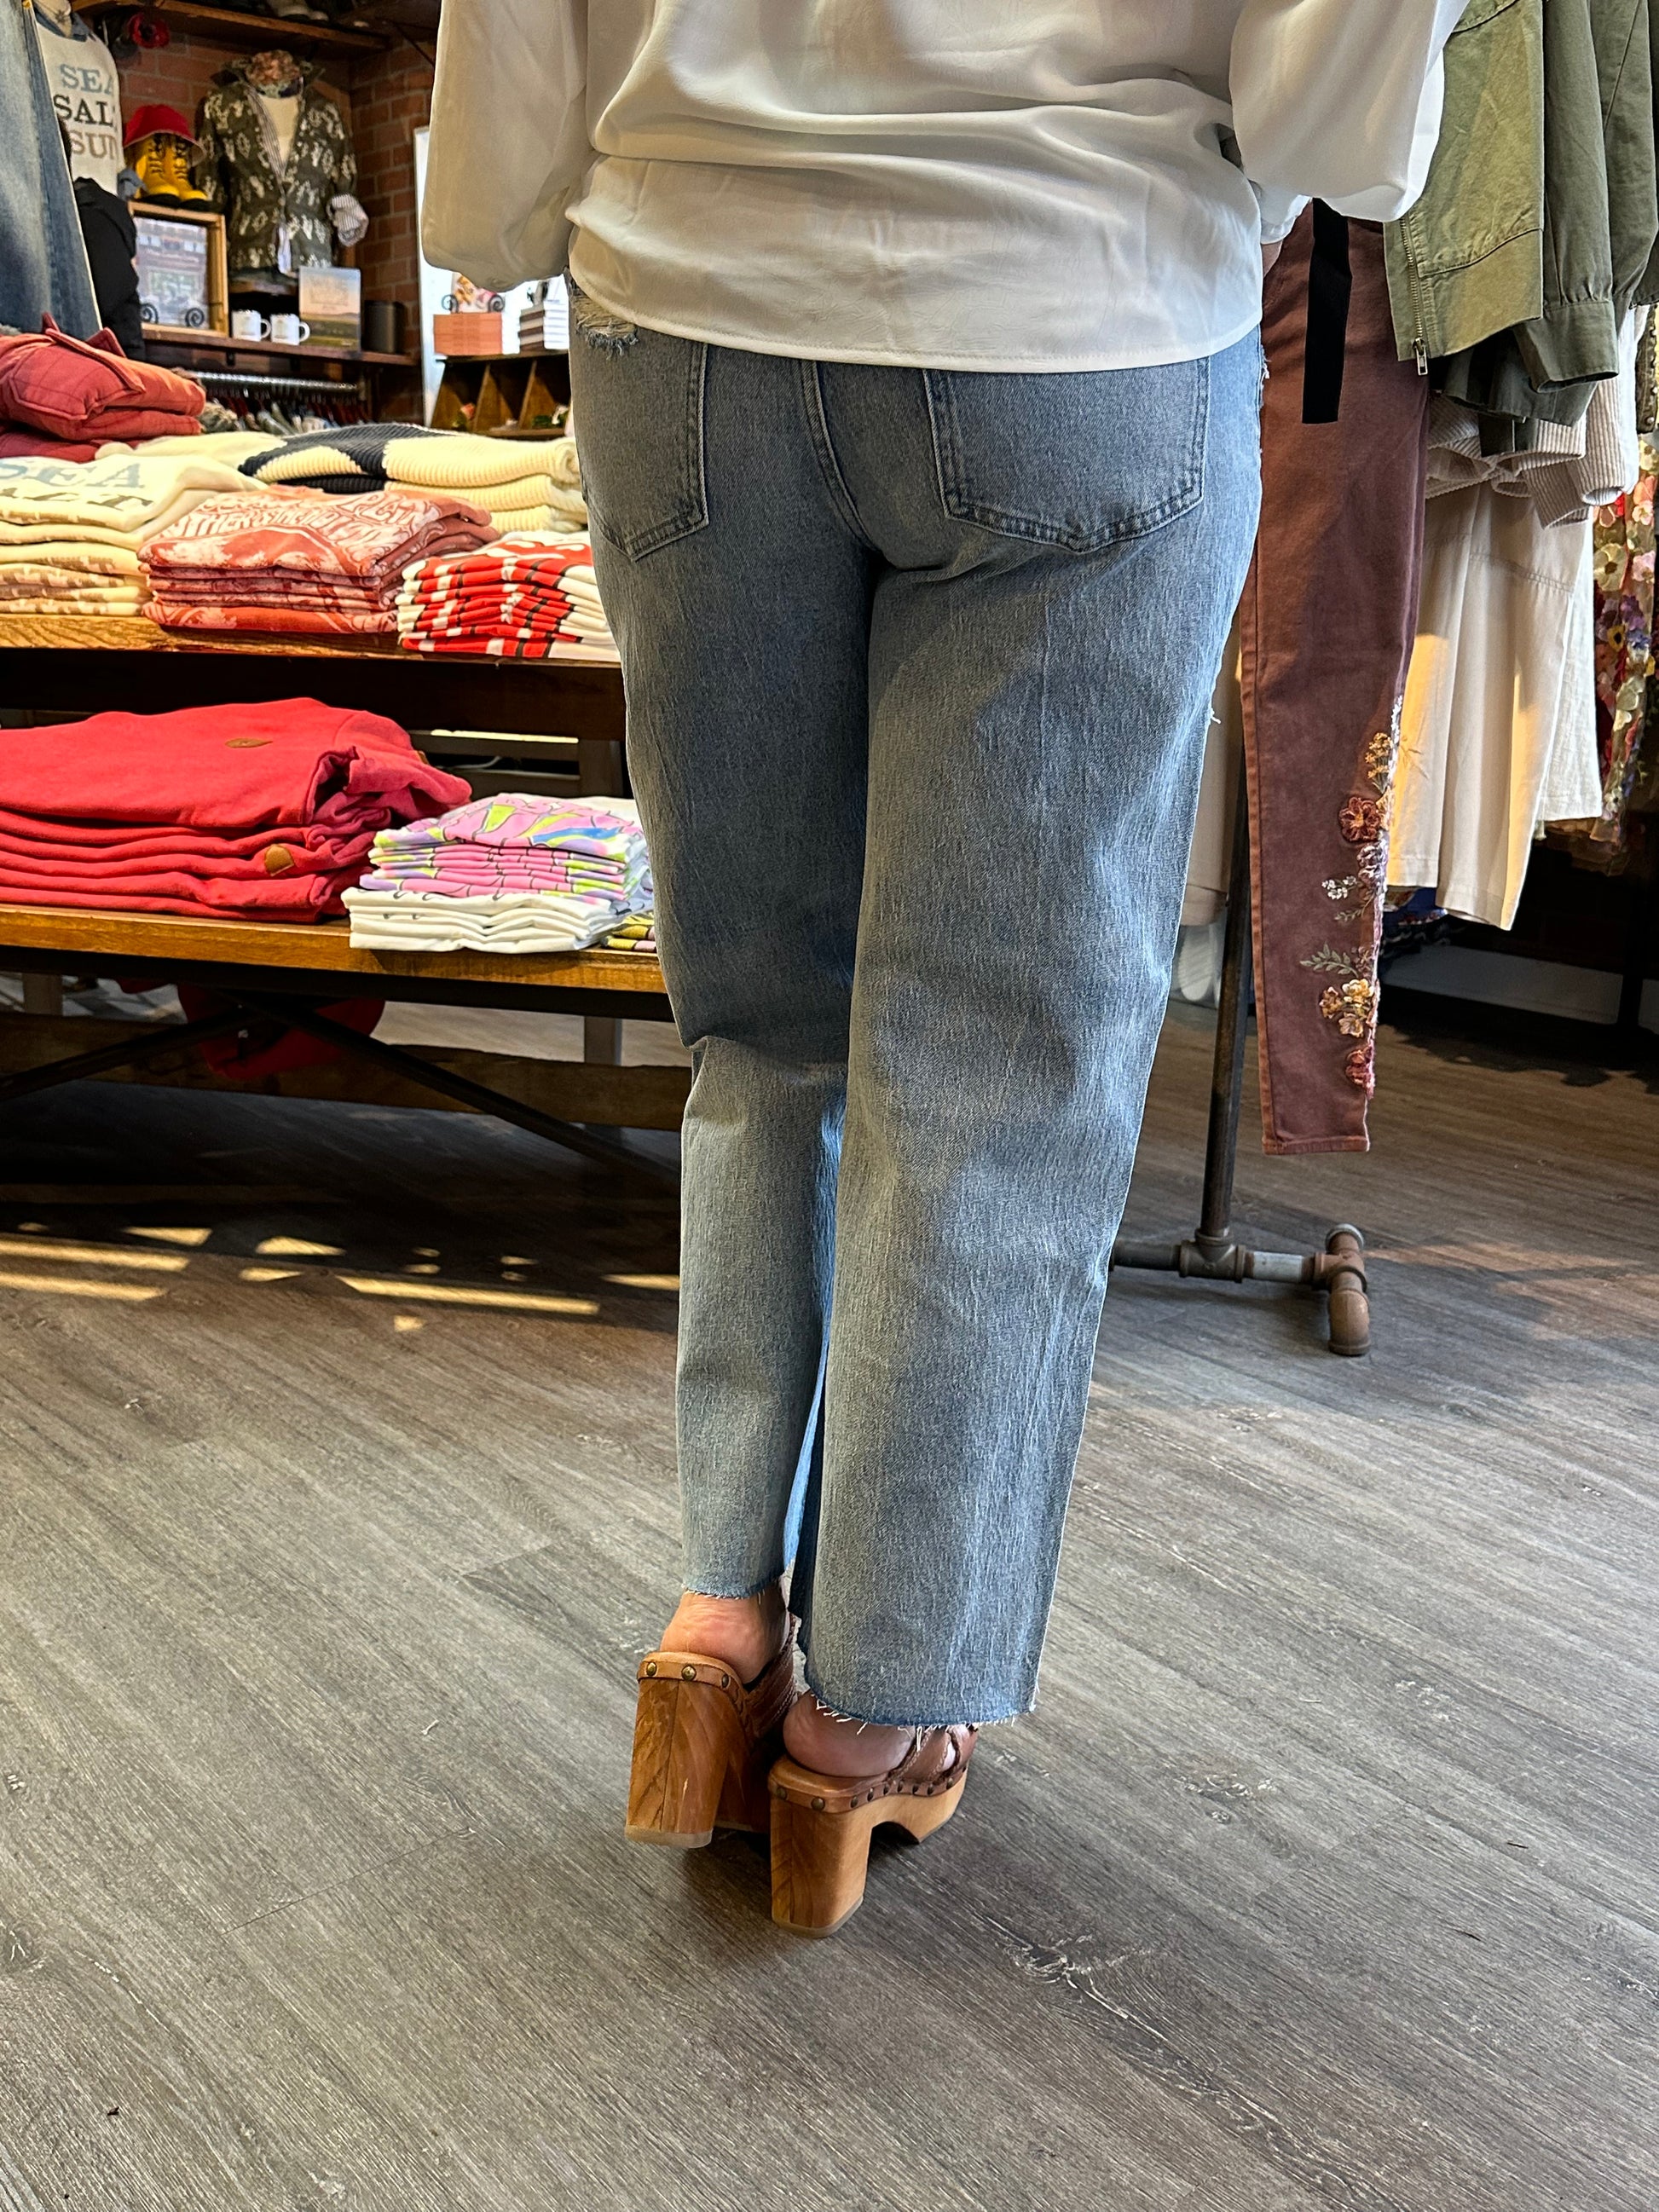 Jillian Cropped Flare Jeans